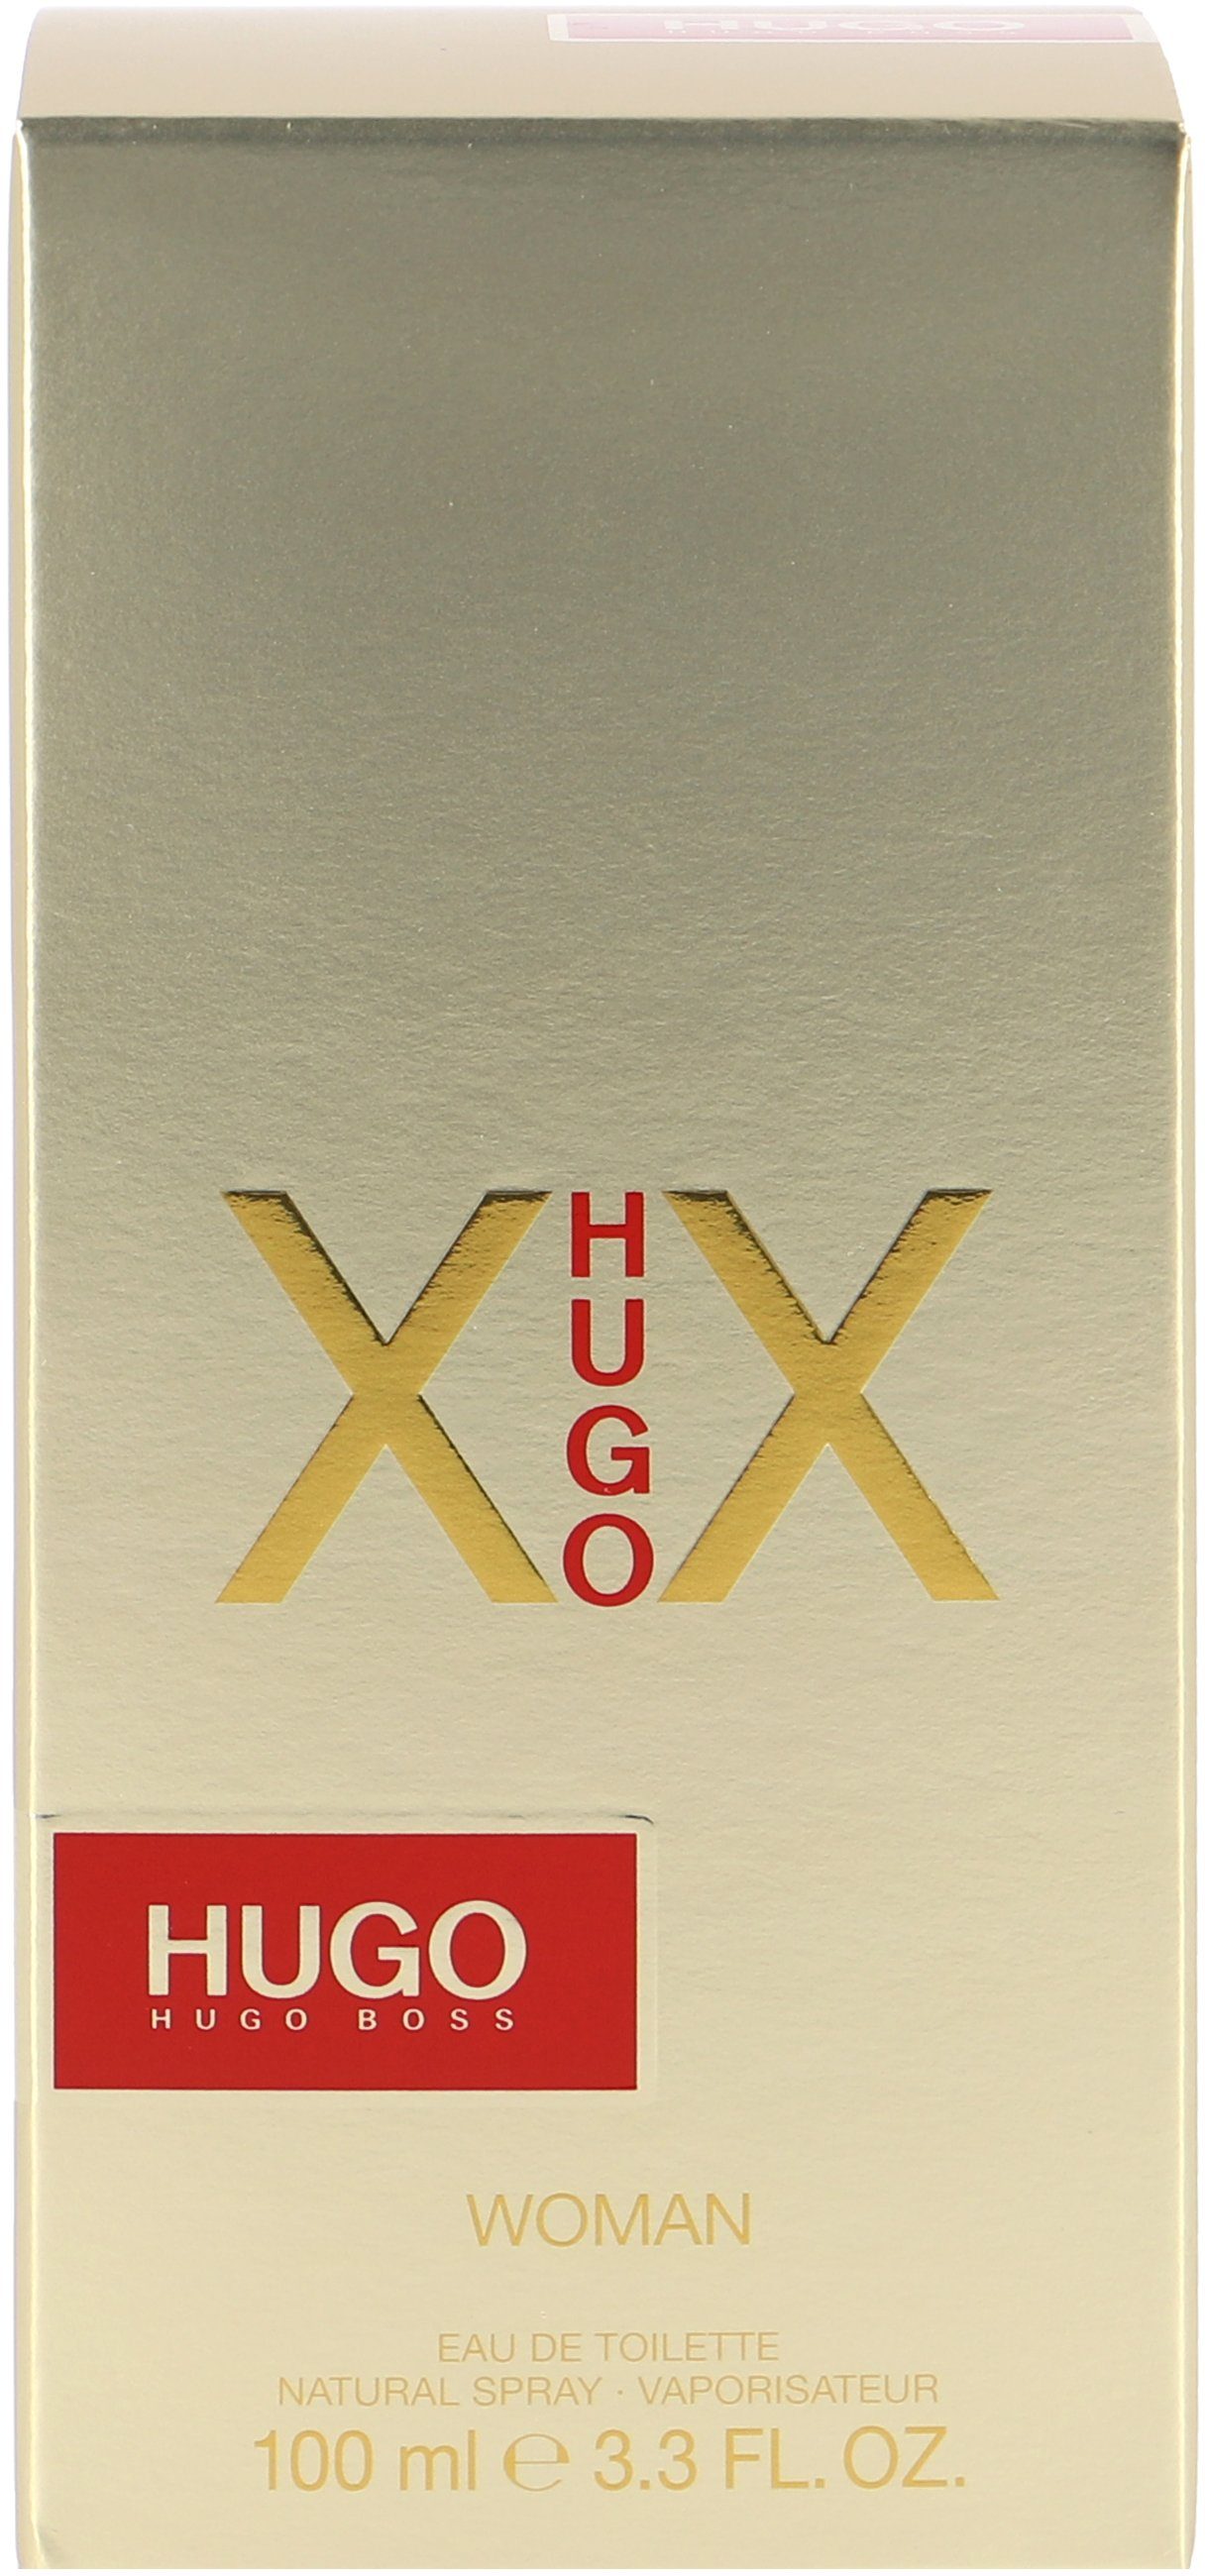 Female XX Hugo Eau Toilette de HUGO